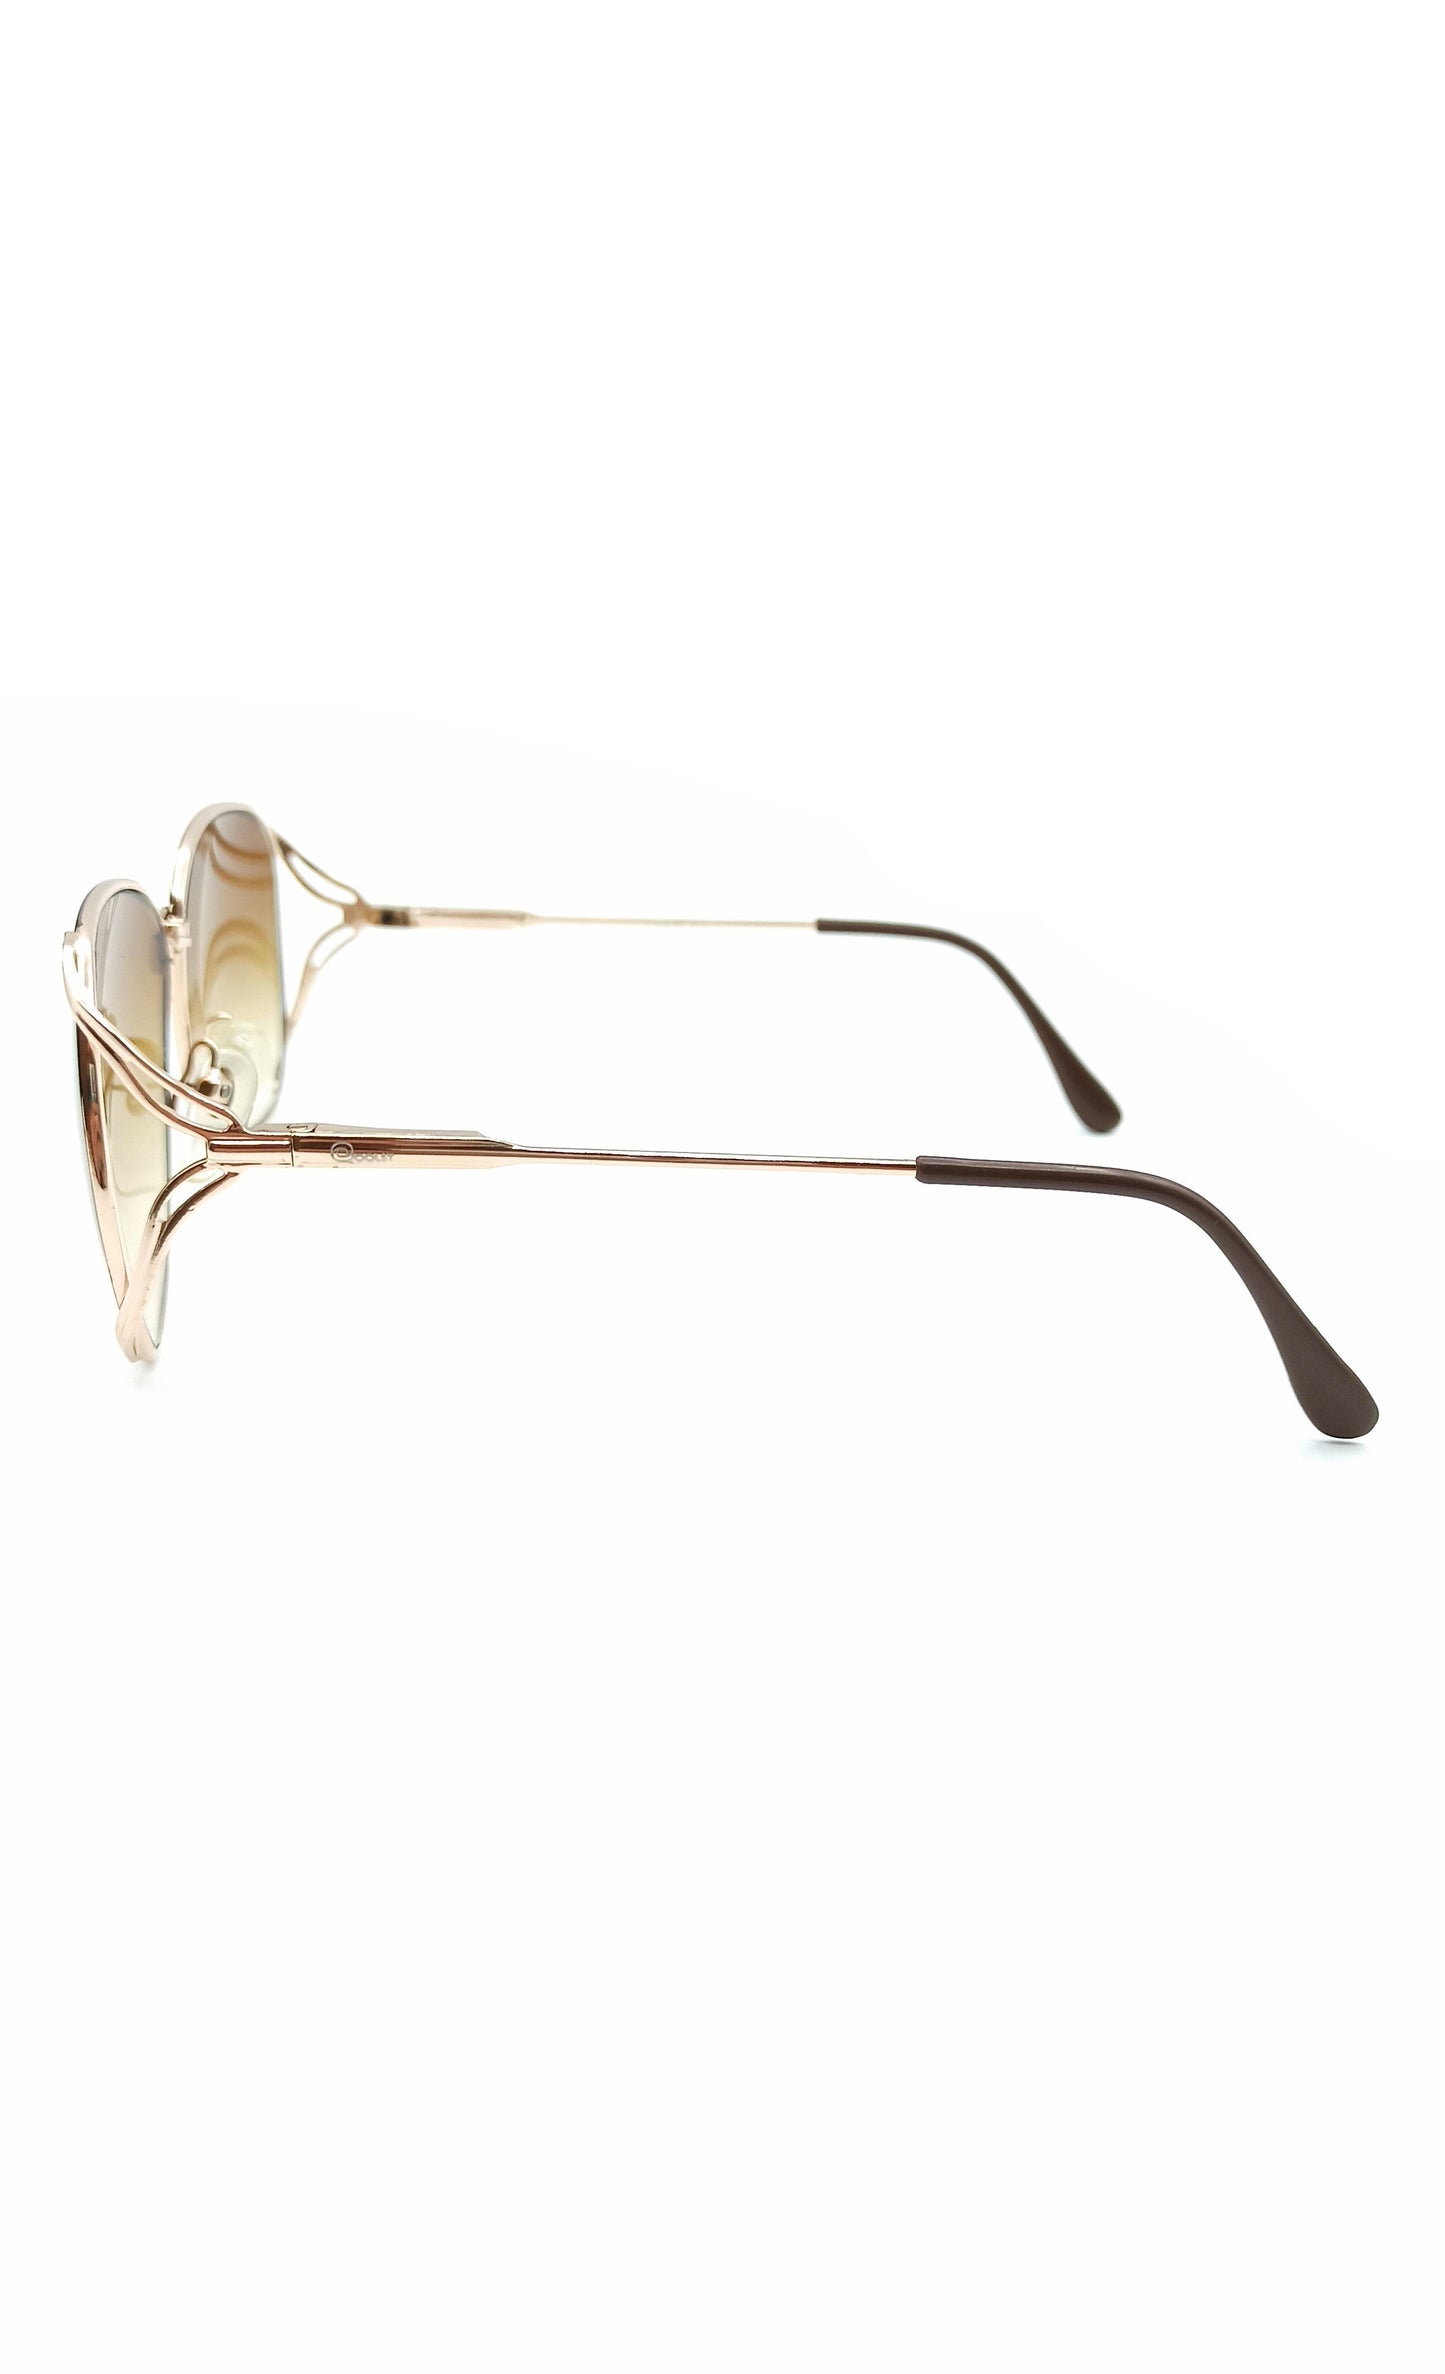 Unisex vintage sunglasses made in Spain Qoolst Estudio 54 